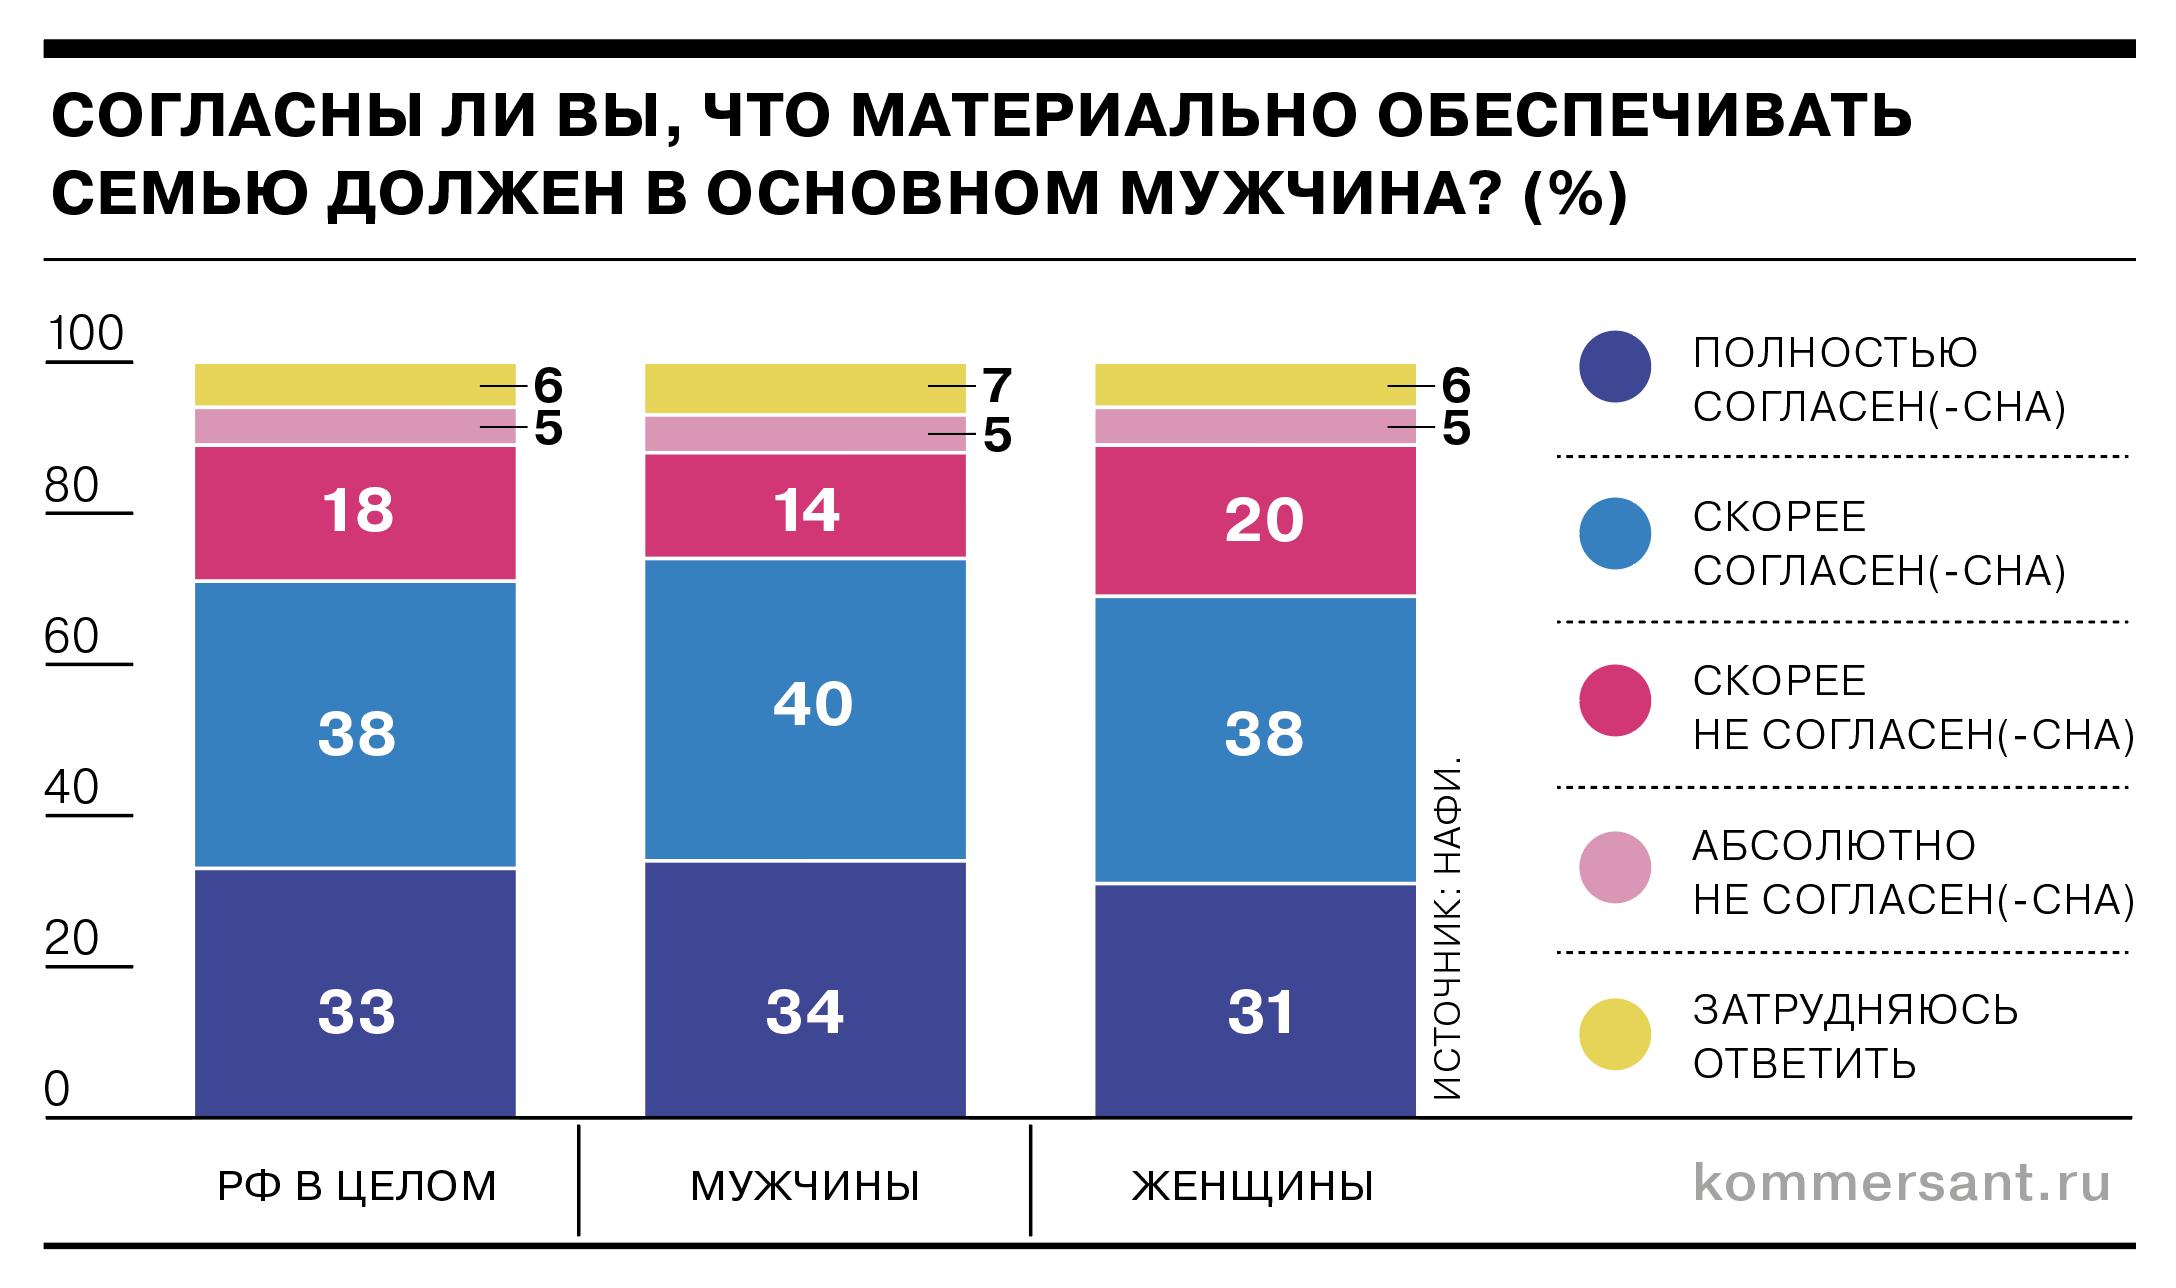 Более 70% россиян считают, что содержать семью должен в основном мужчина